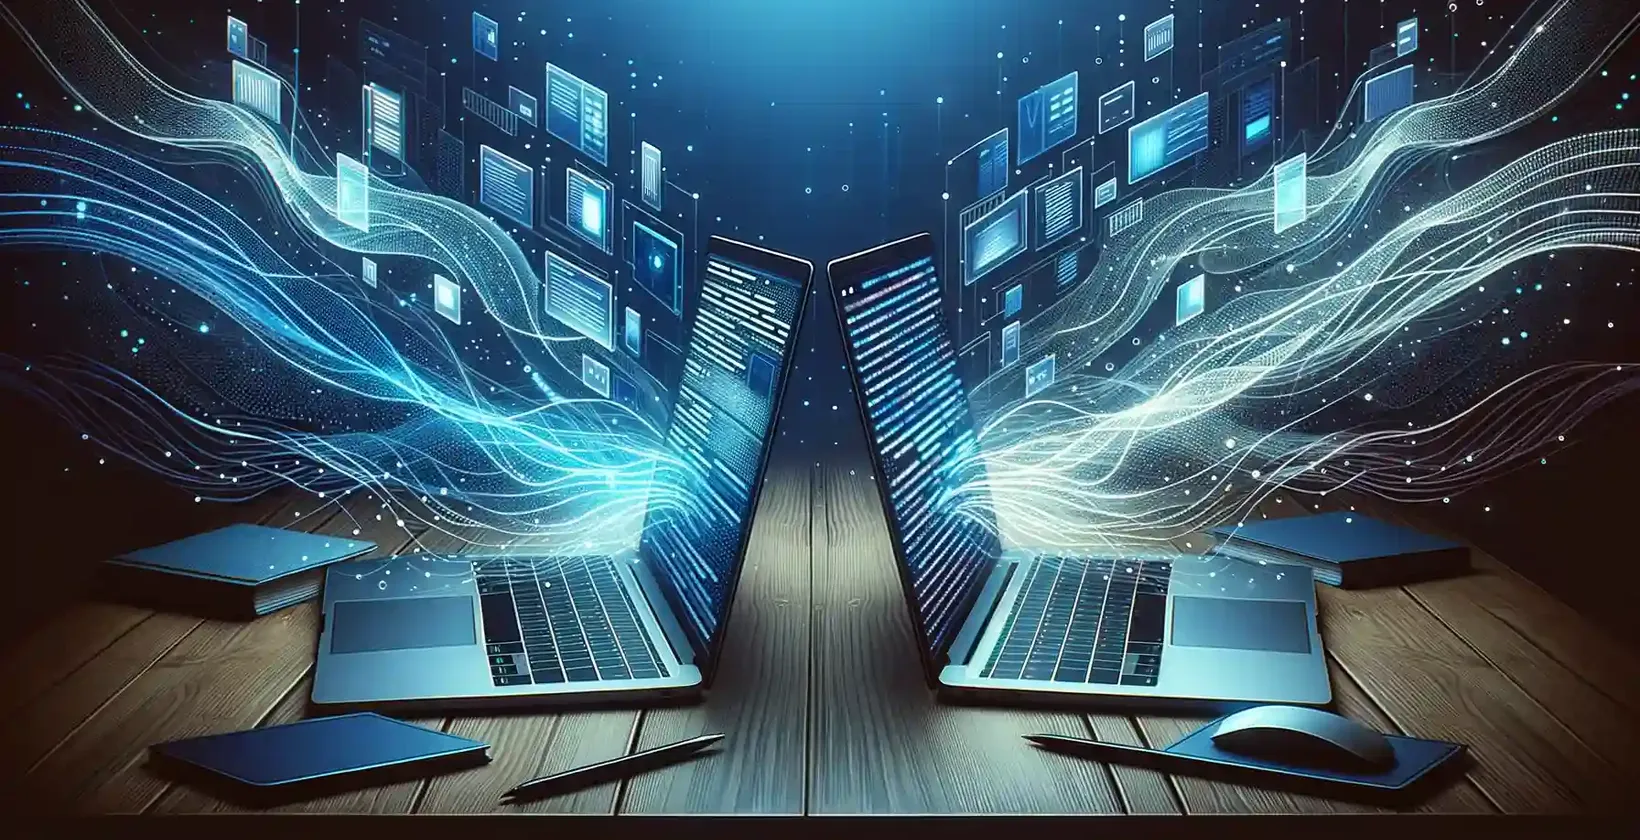 שני מחשבים ניידים עם רקע דיגיטלי מחוברים זה לזה